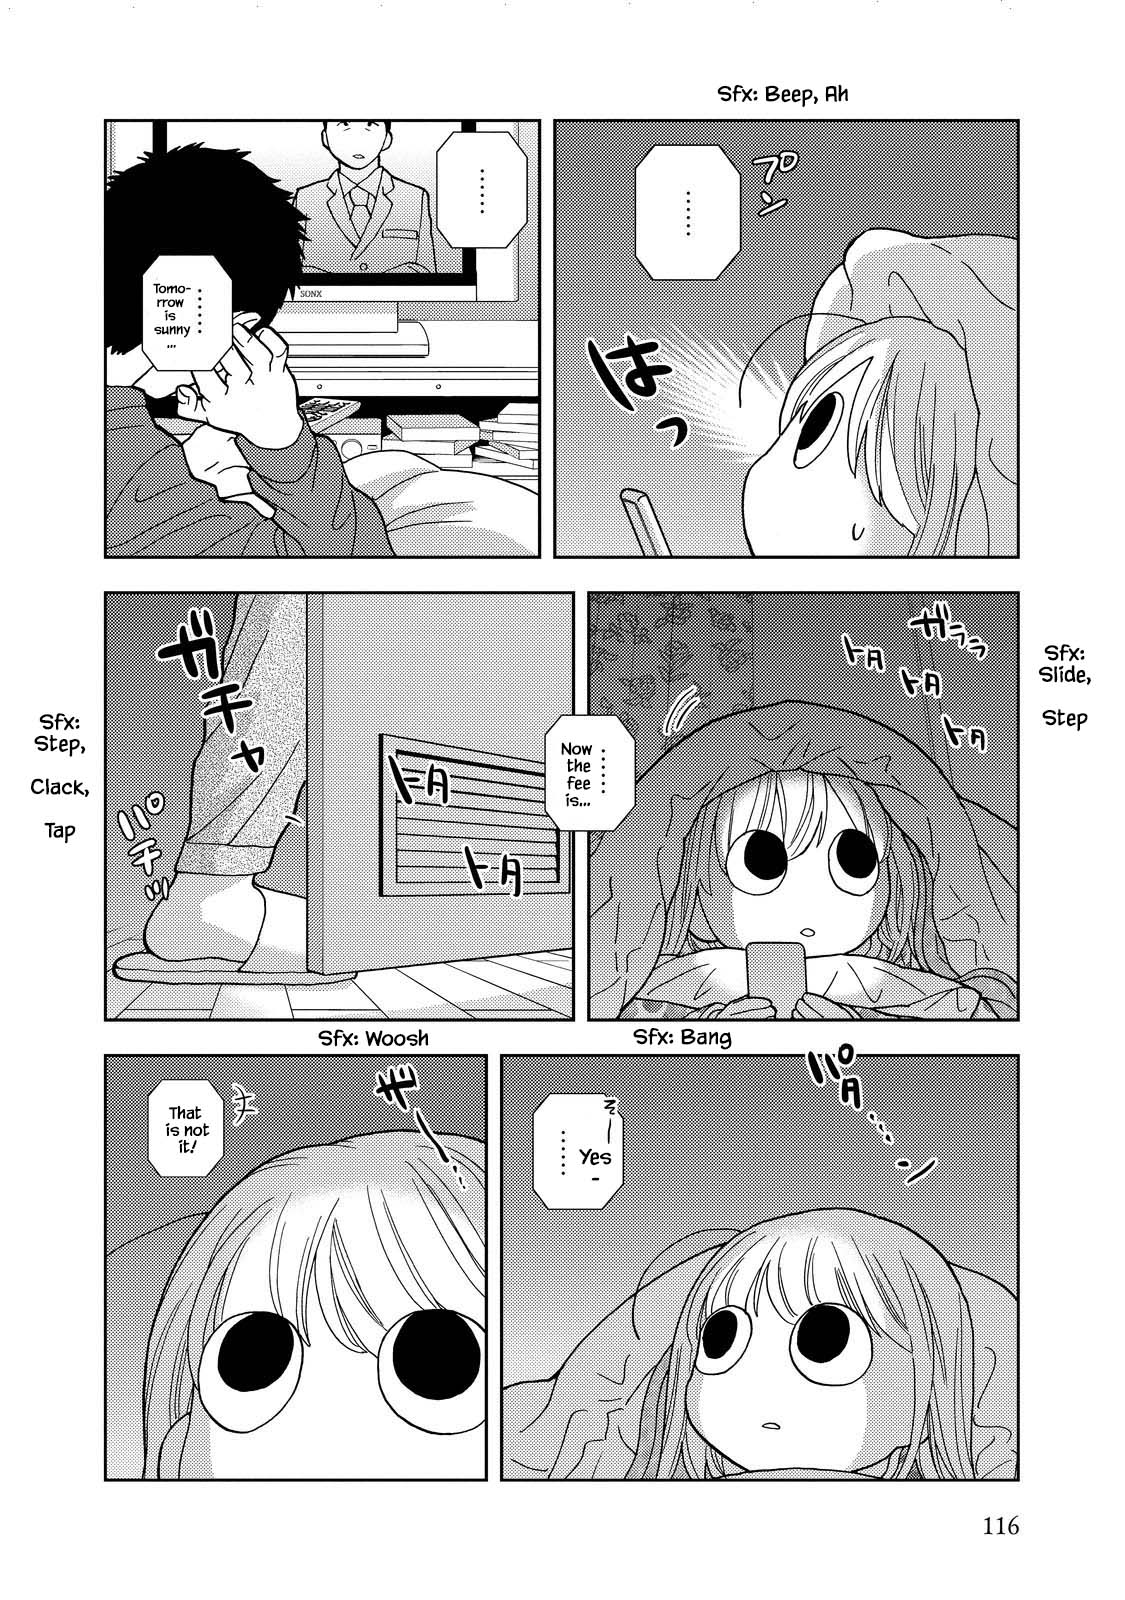 Takako-San - 25 page 6-661bf46d